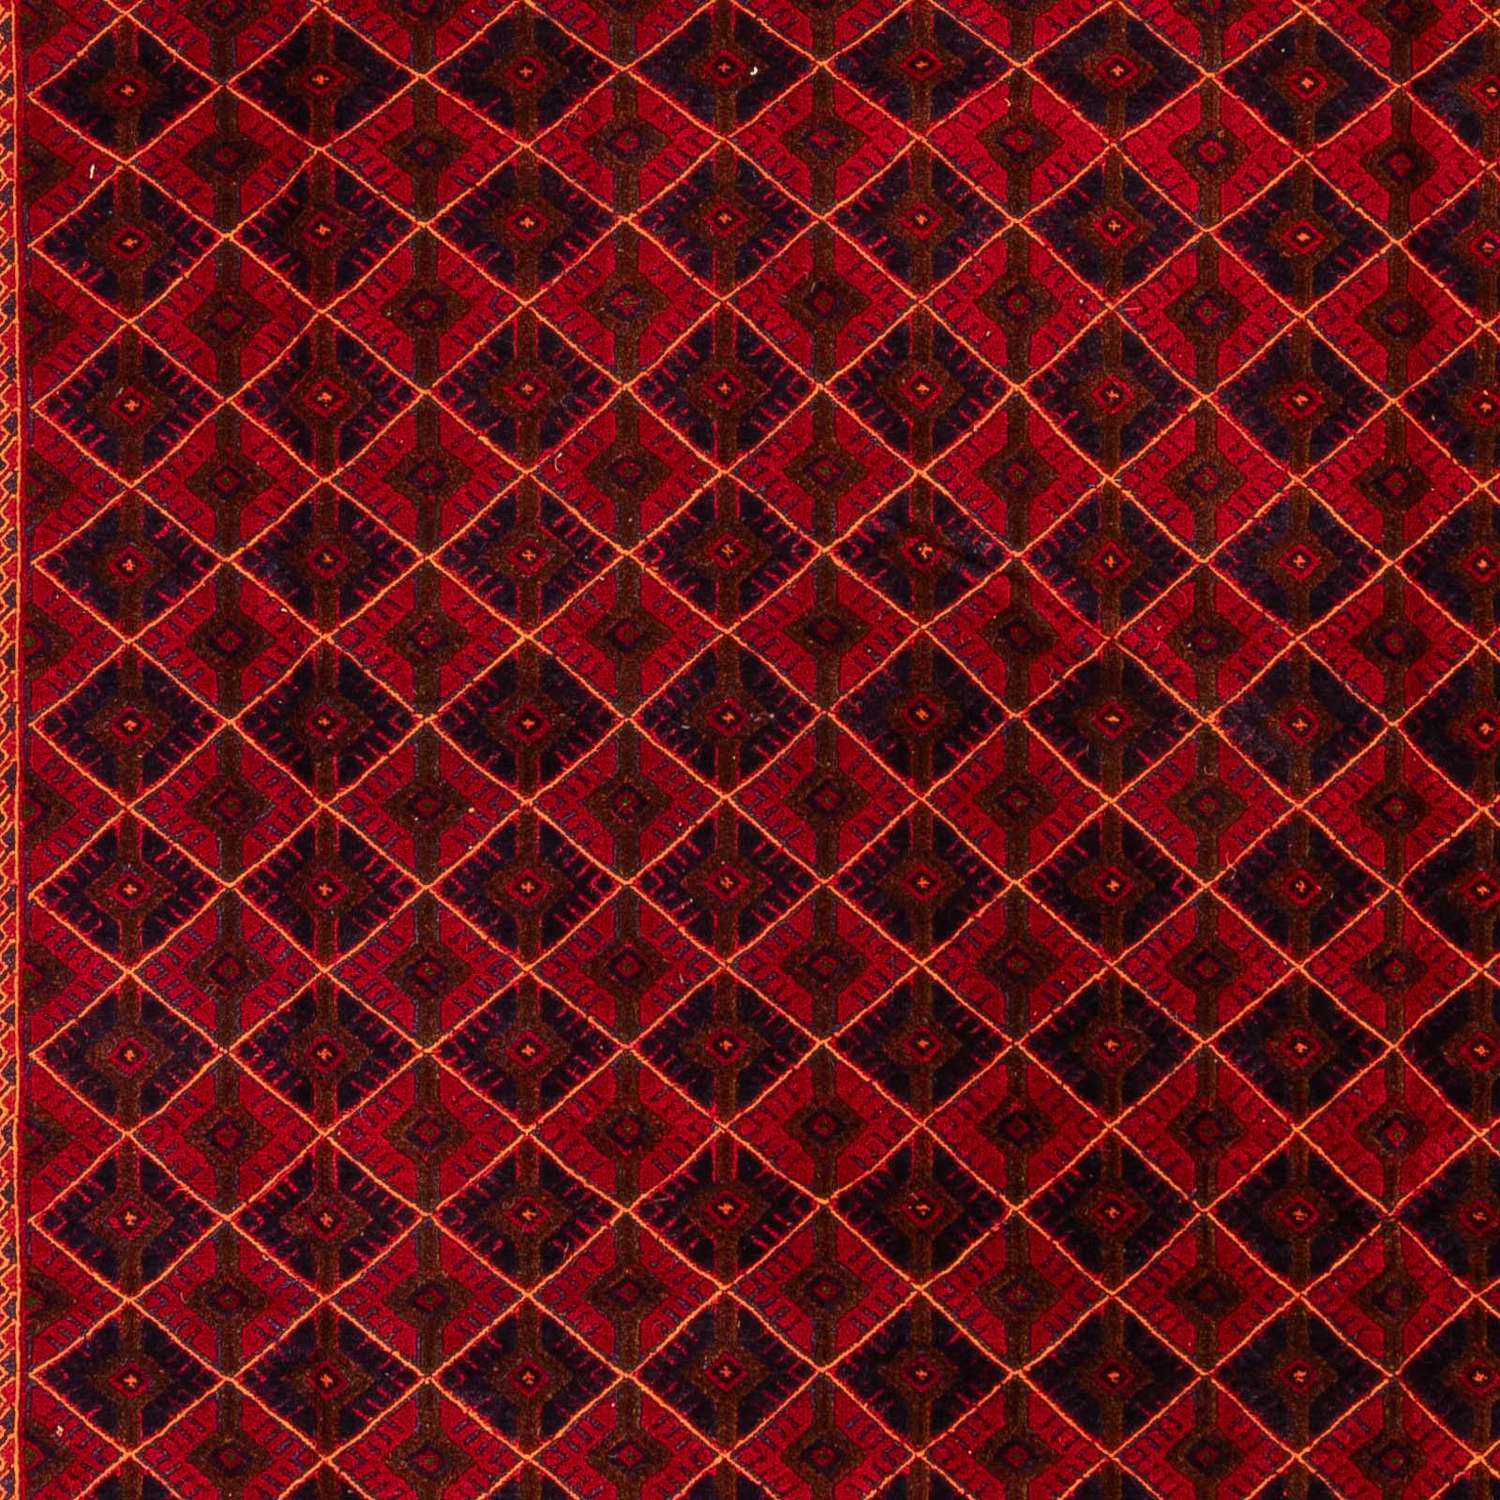 Kelim Rug - Oriental - 289 x 205 cm - dark red